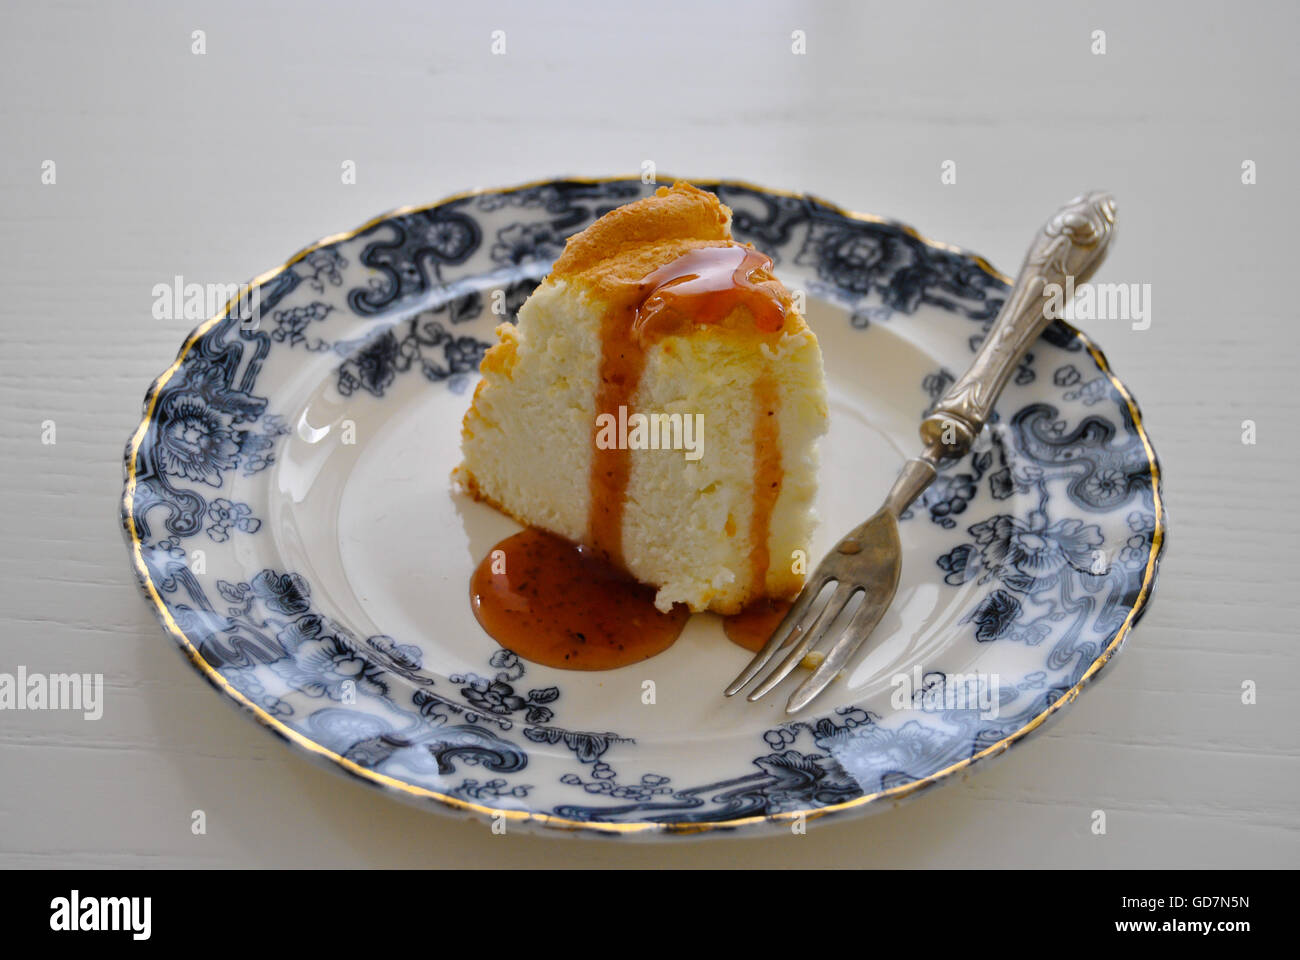 Gros plan d'une tranche de gâteau ange sur une assiette, dessert maison. L'alimentation Banque D'Images